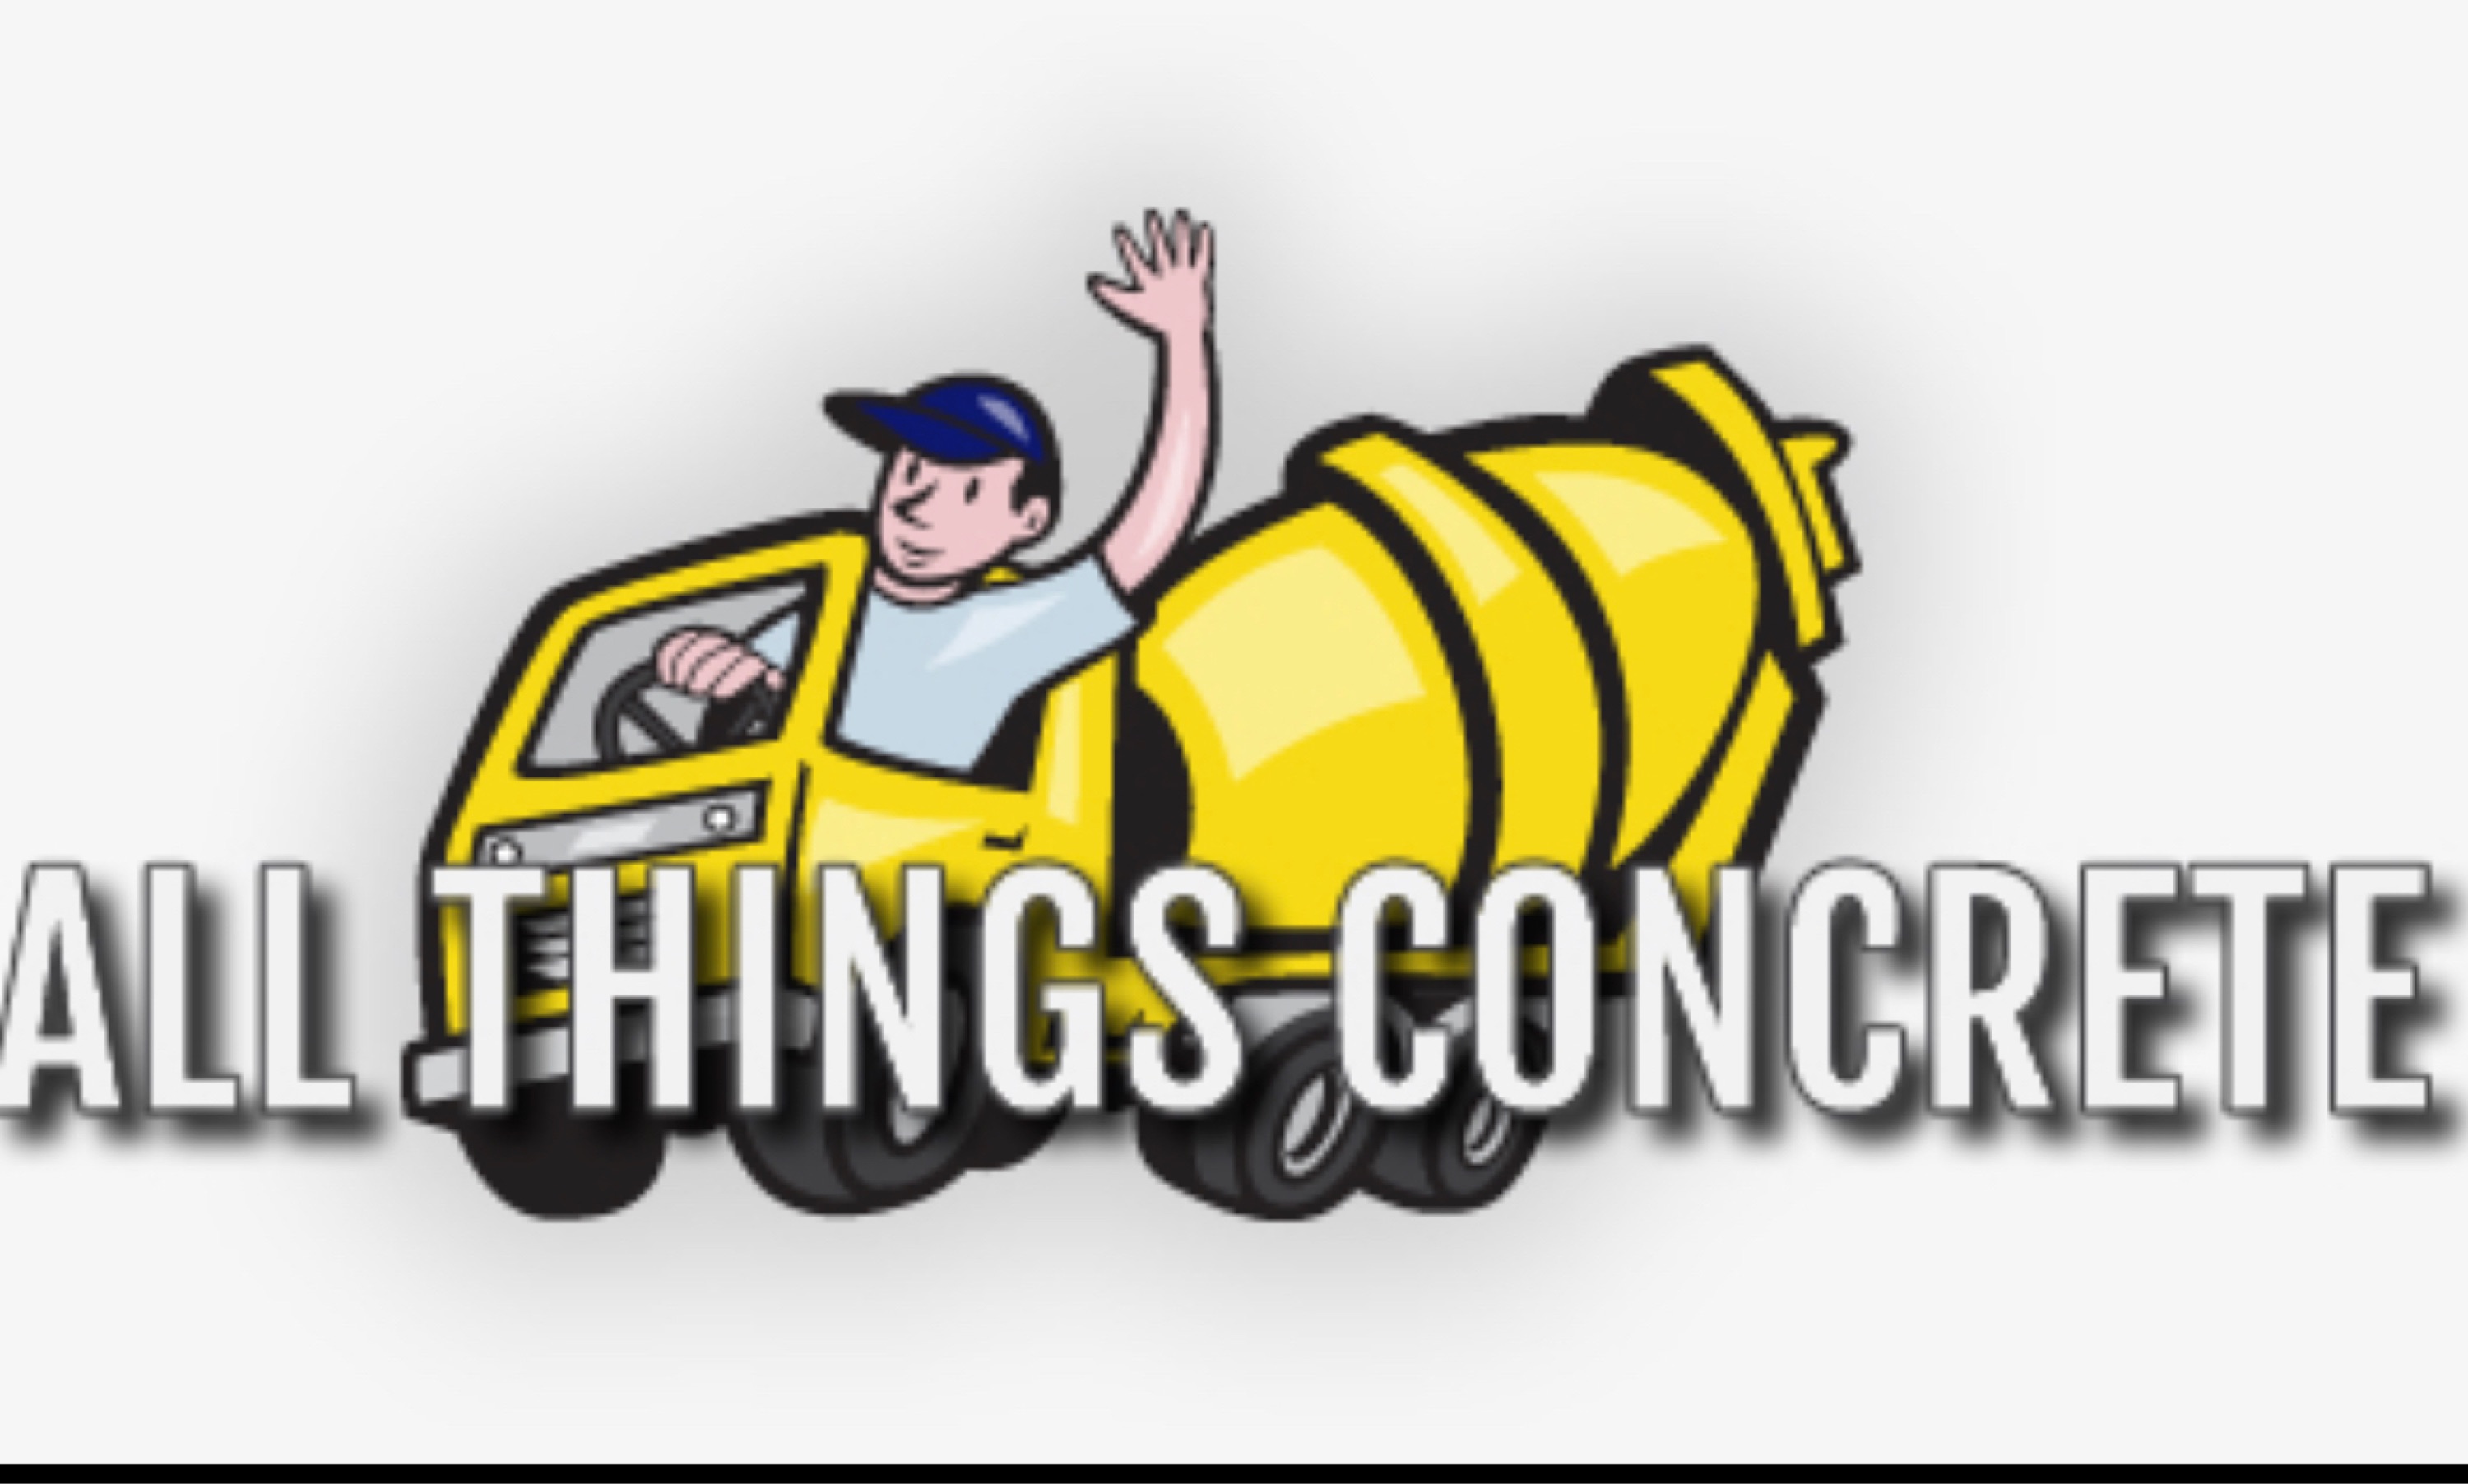 All Things Concrete Logo